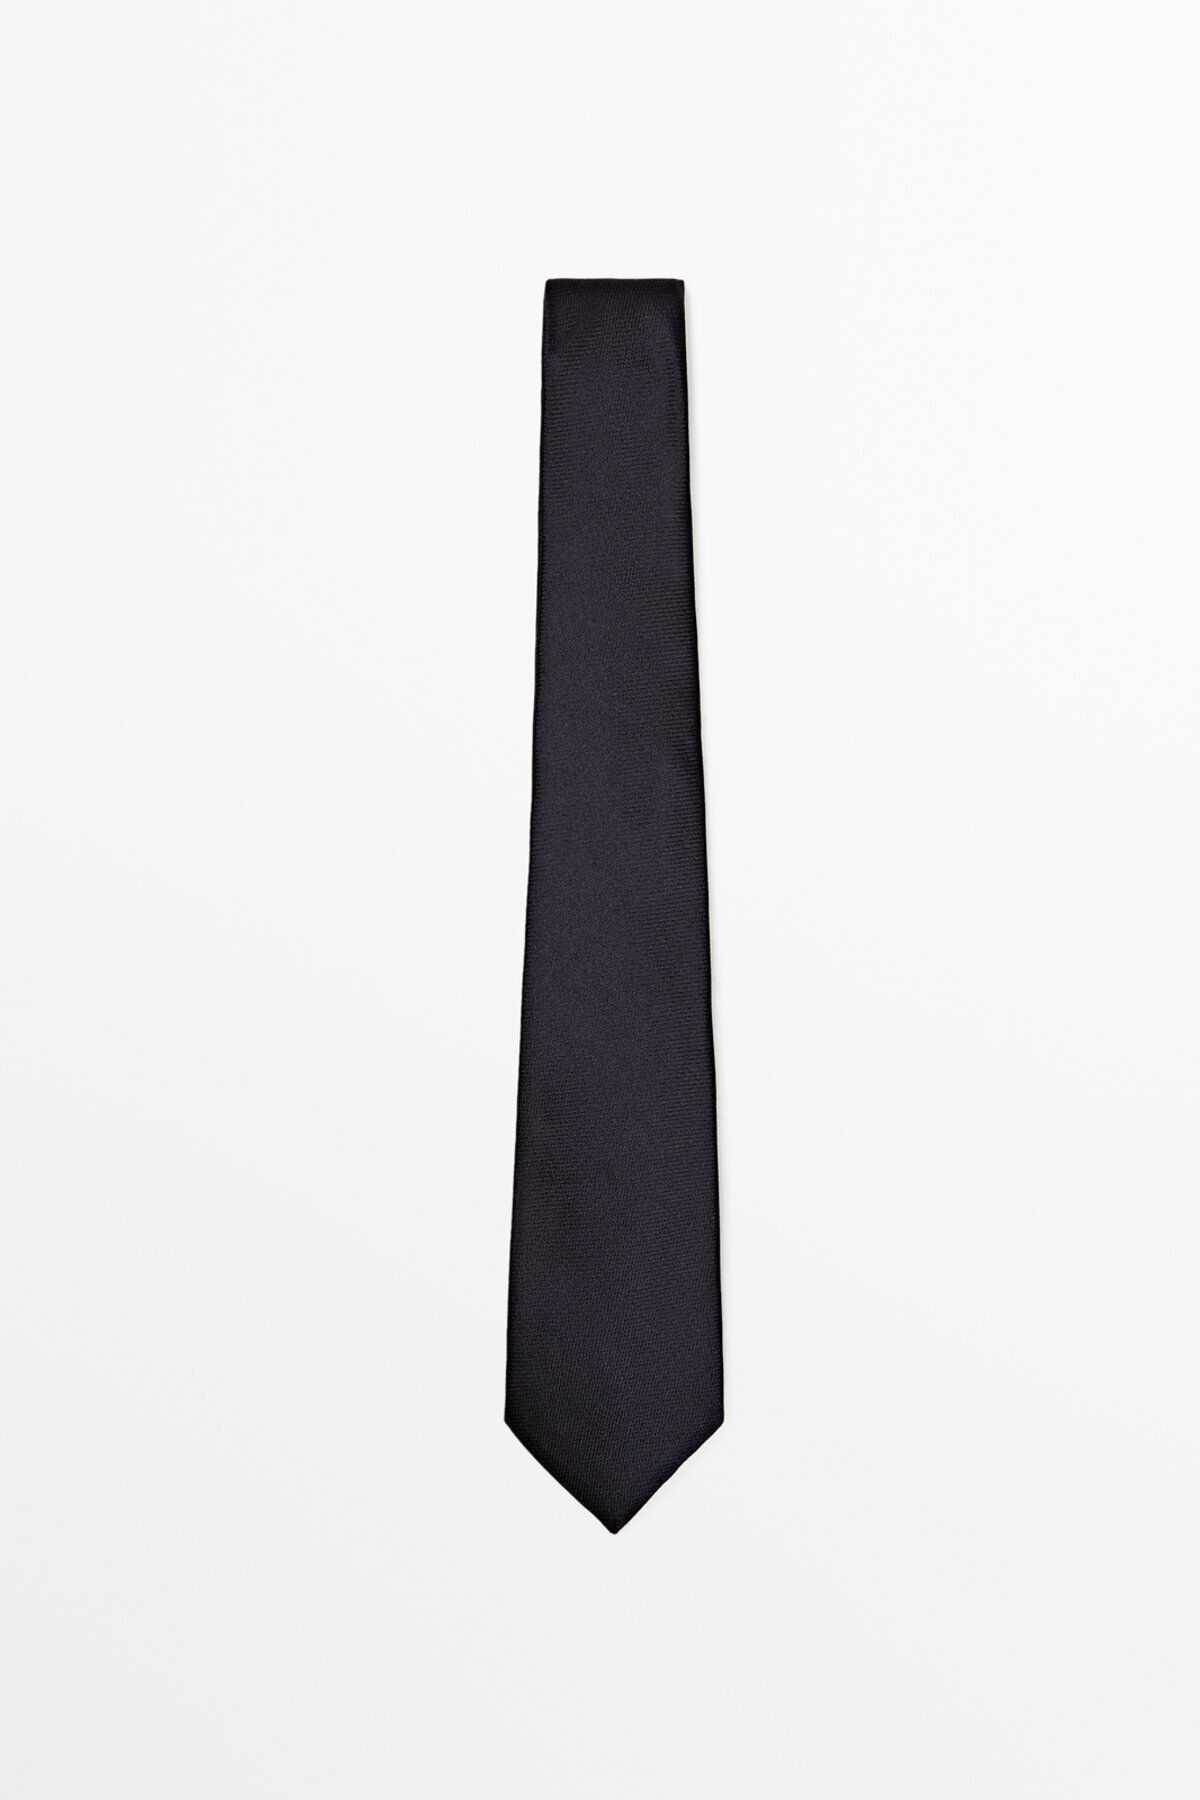 Massimo Dutti %100 ipek dokulu kravat